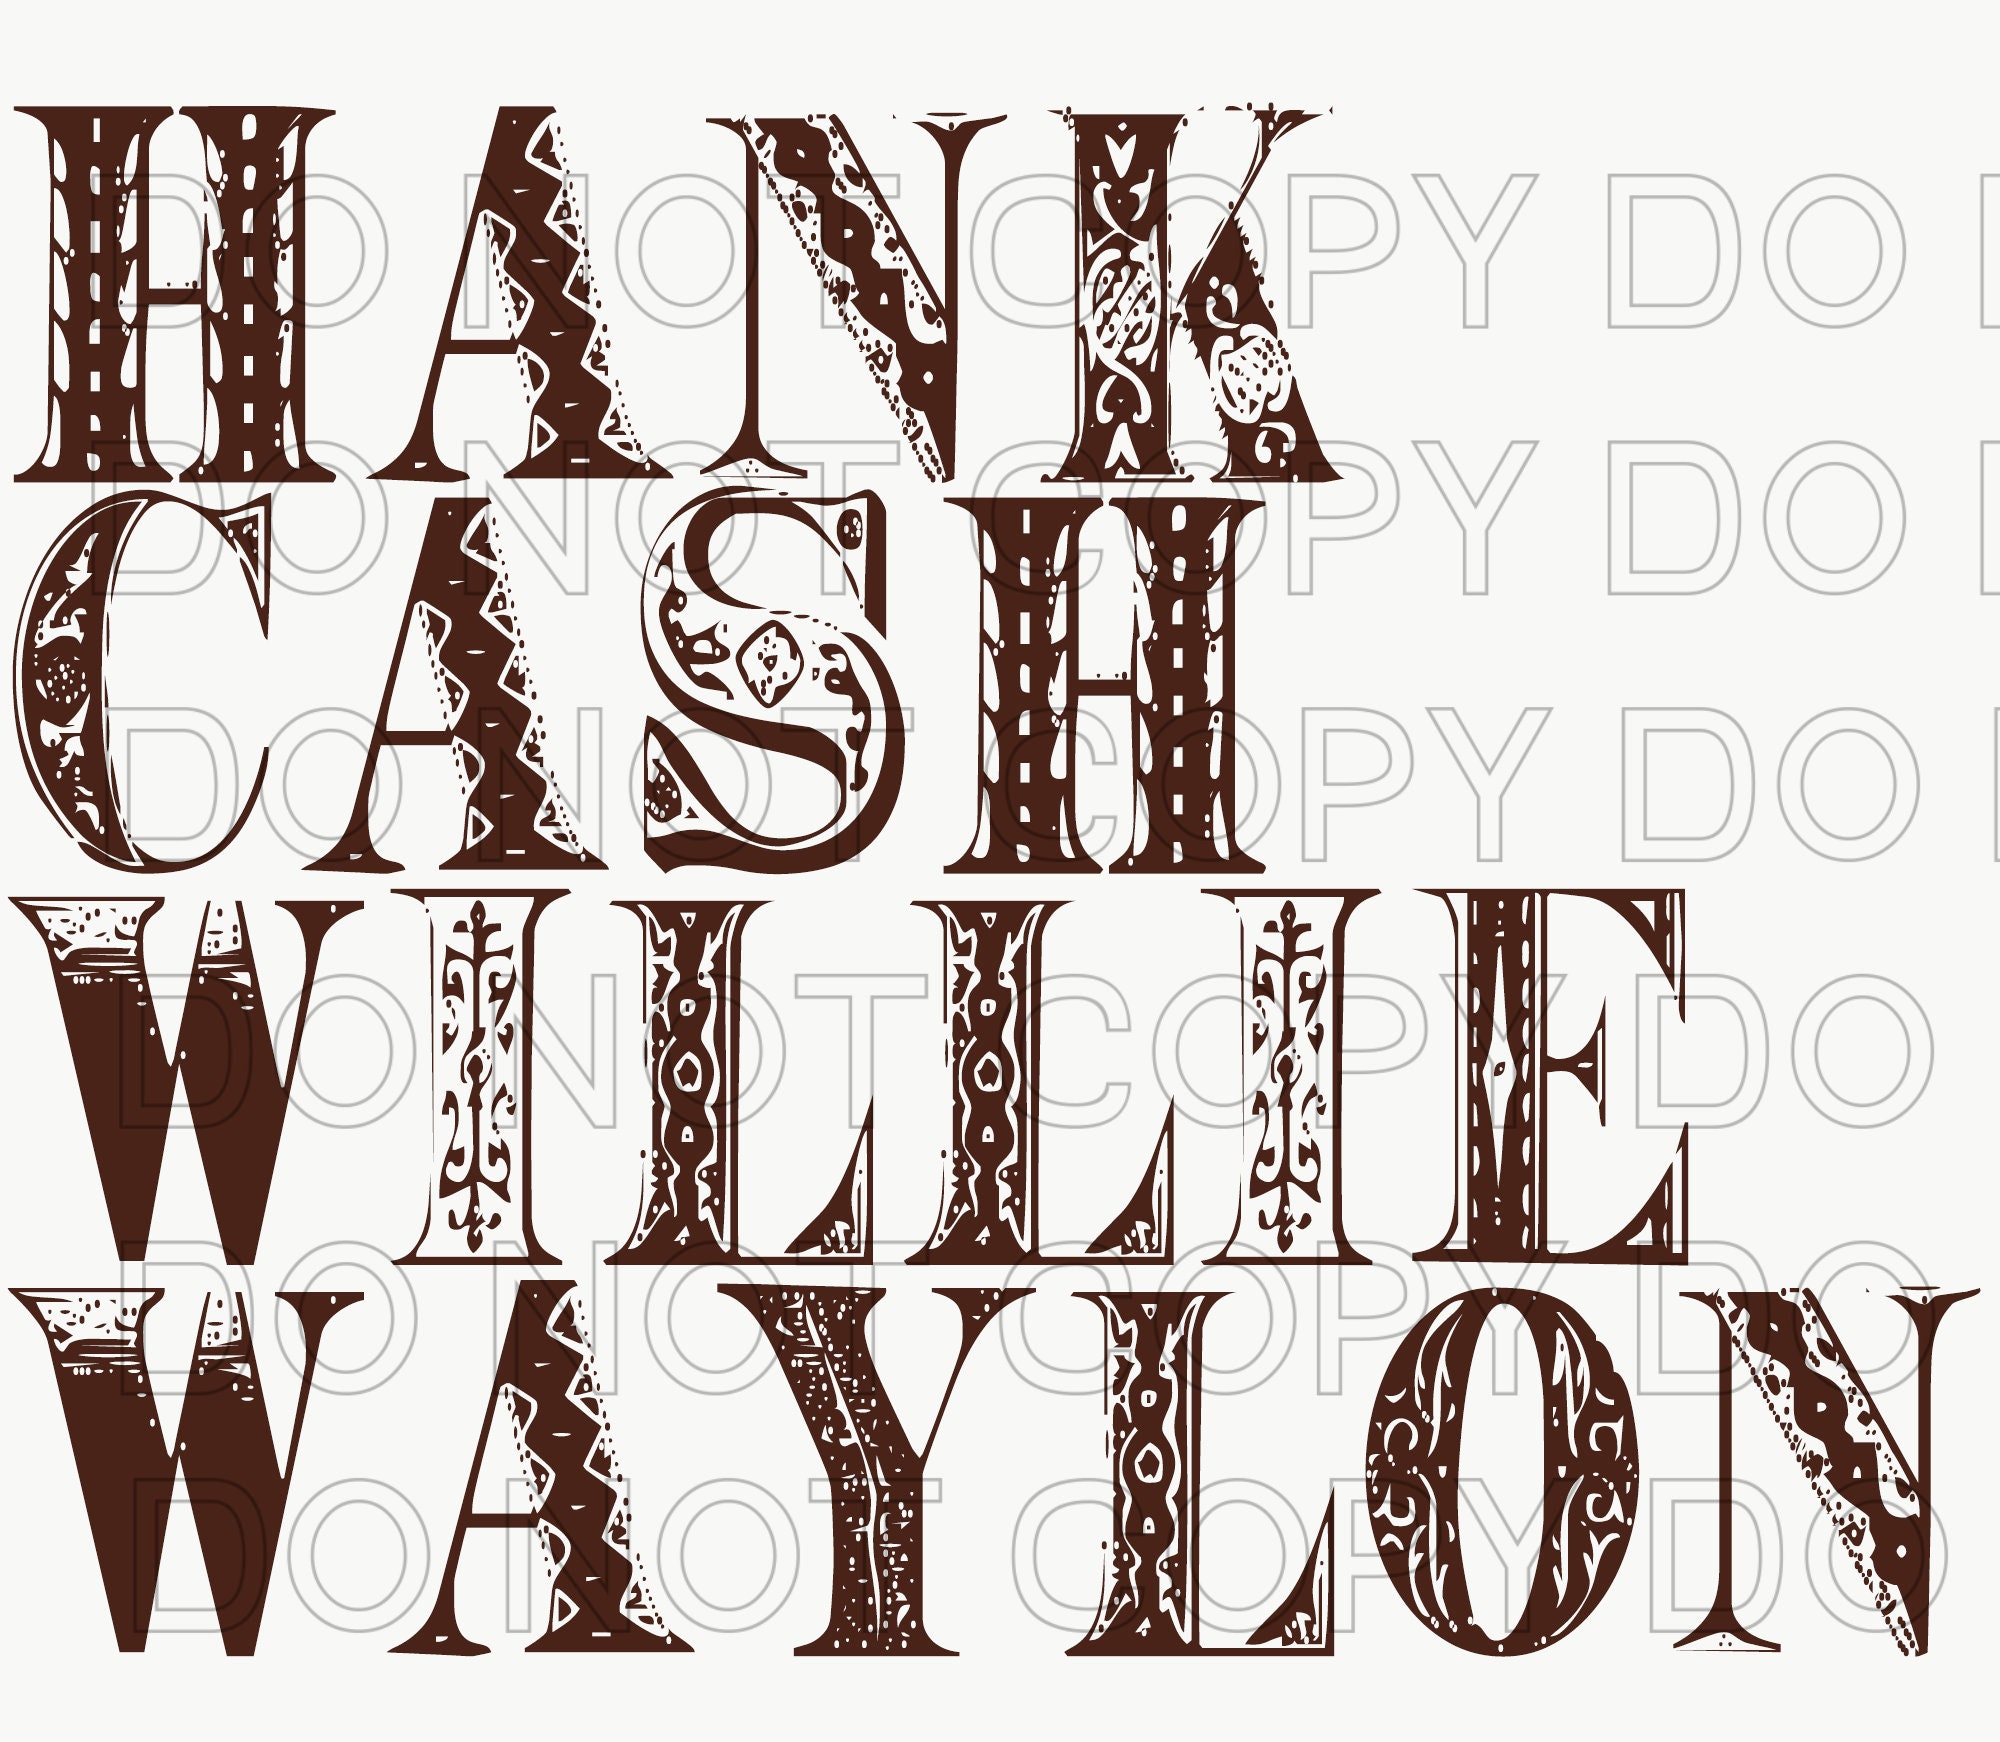 Waylon| Sublimation .PNG File| Instant DIGITAL download Hank Cash Willie